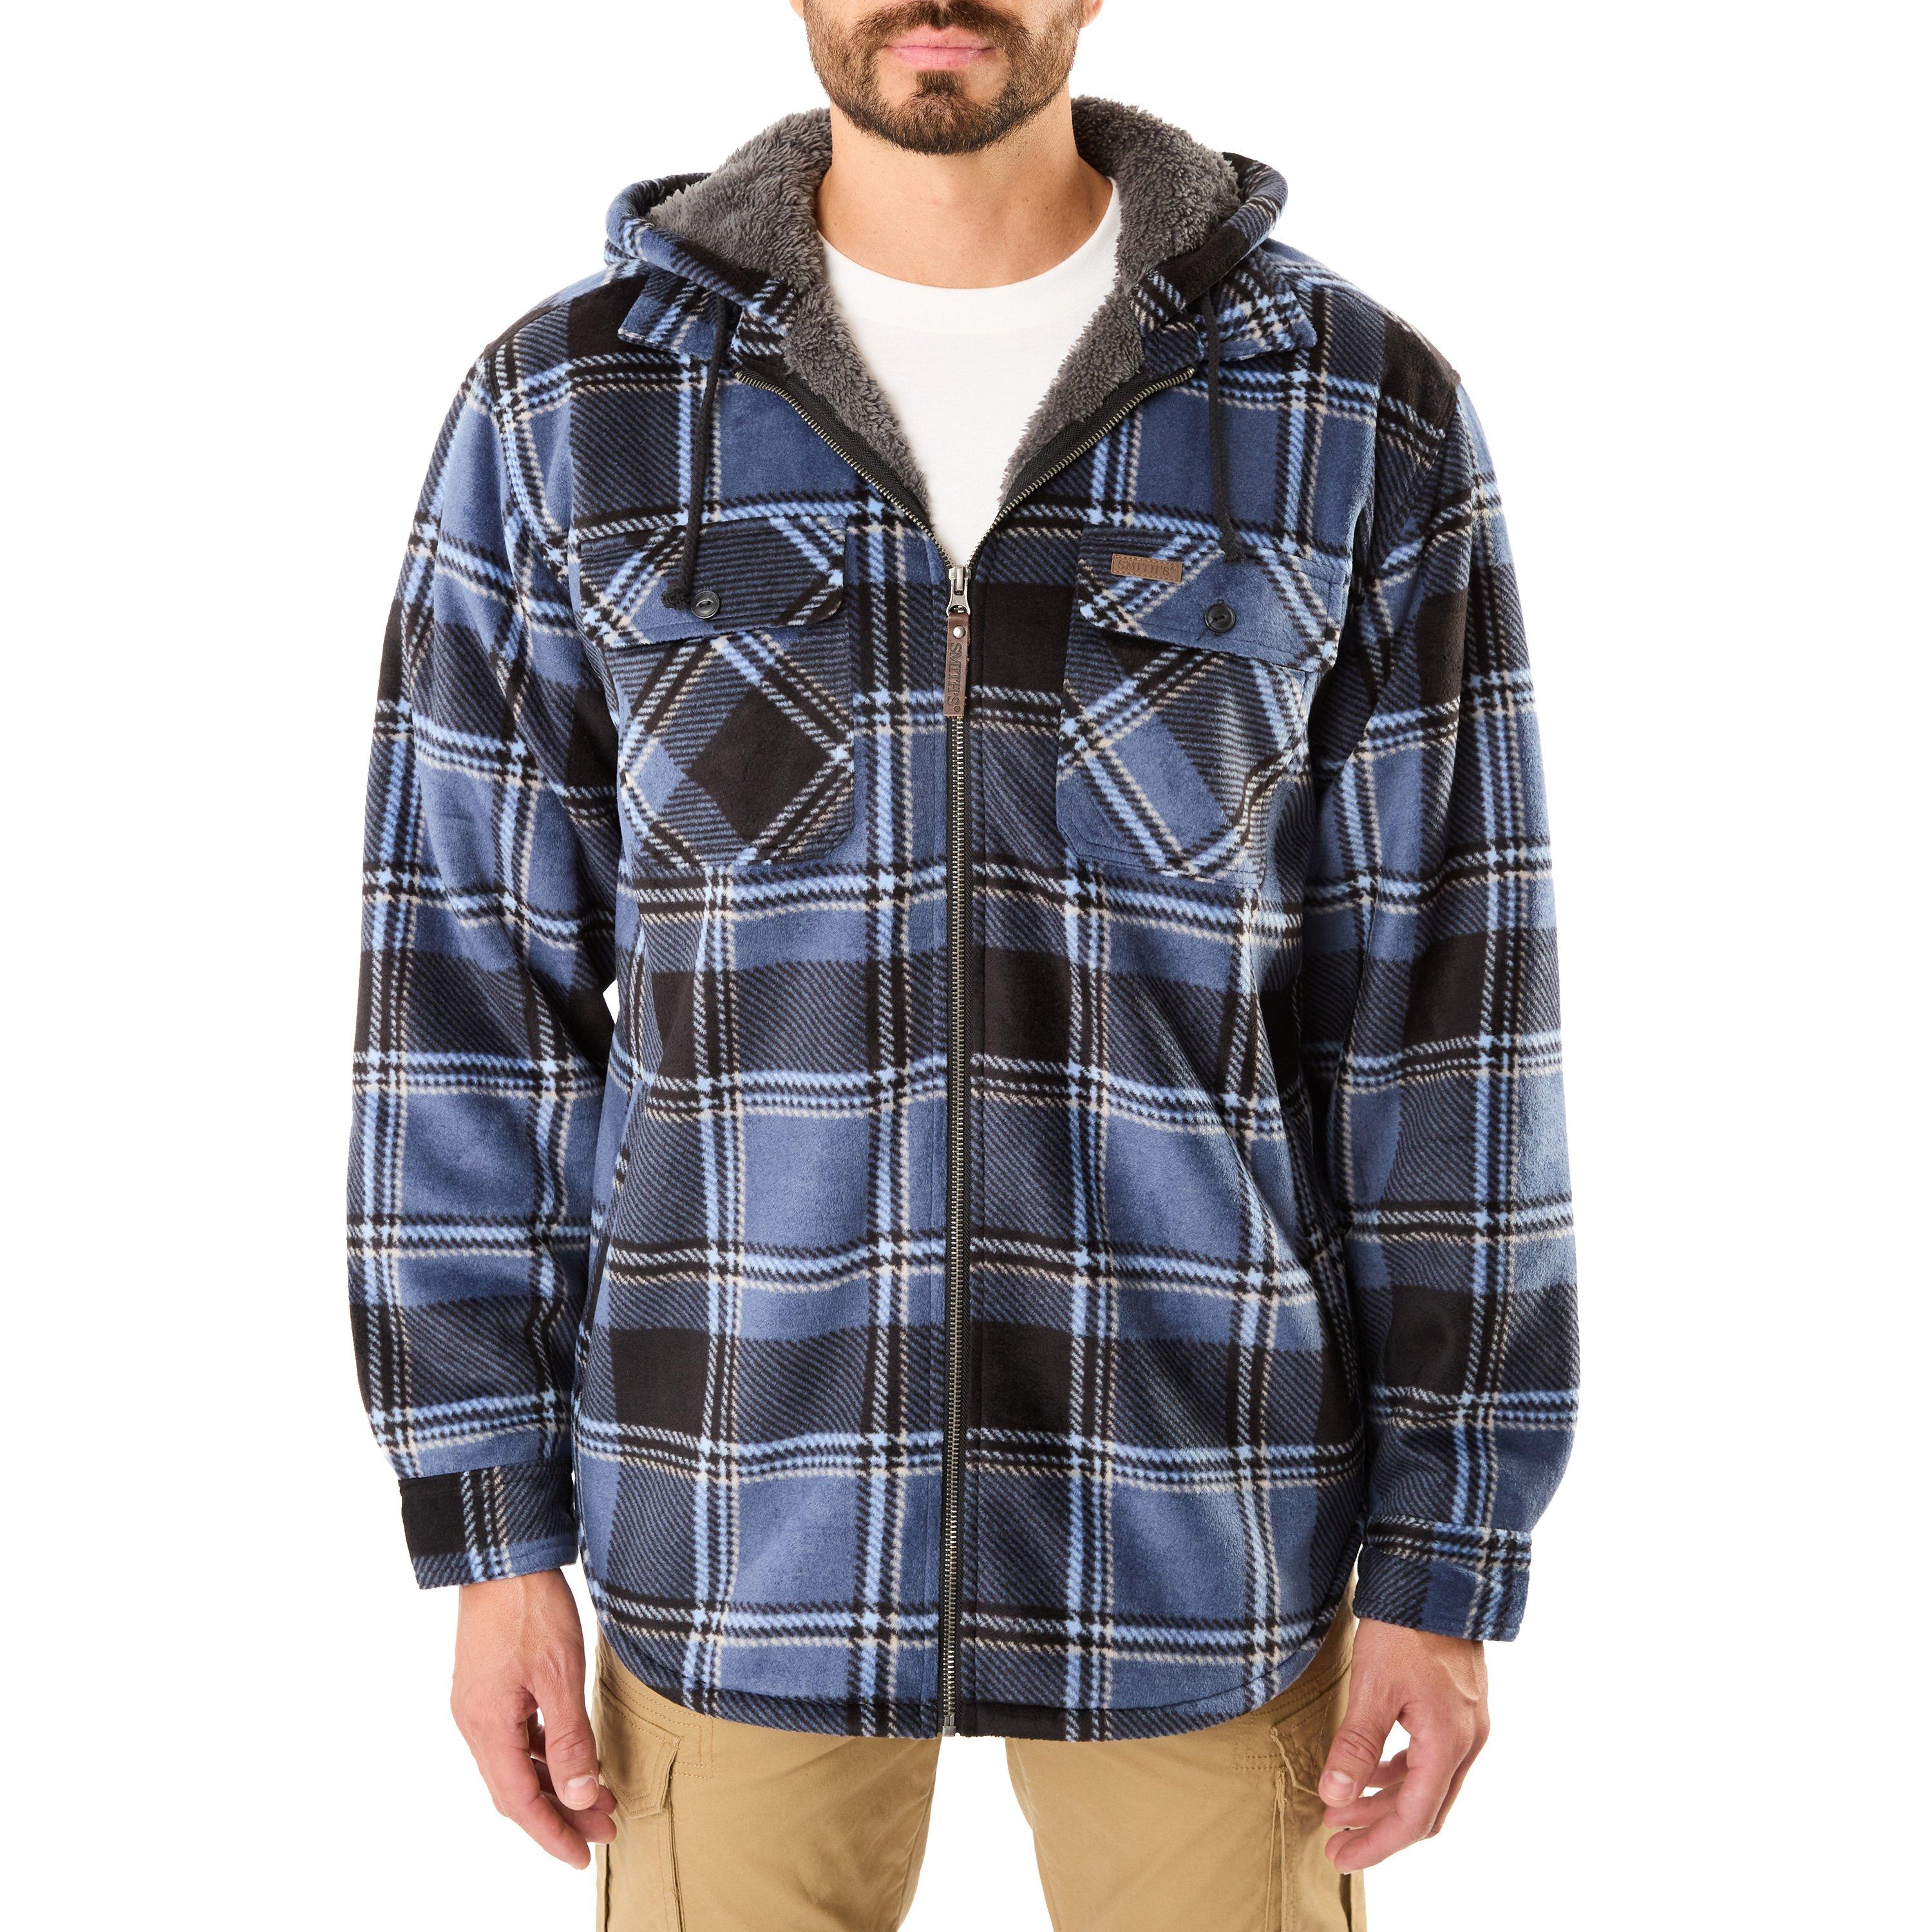 Smith's Workwear Men's Sherpa-Lined Microfleece Jacket